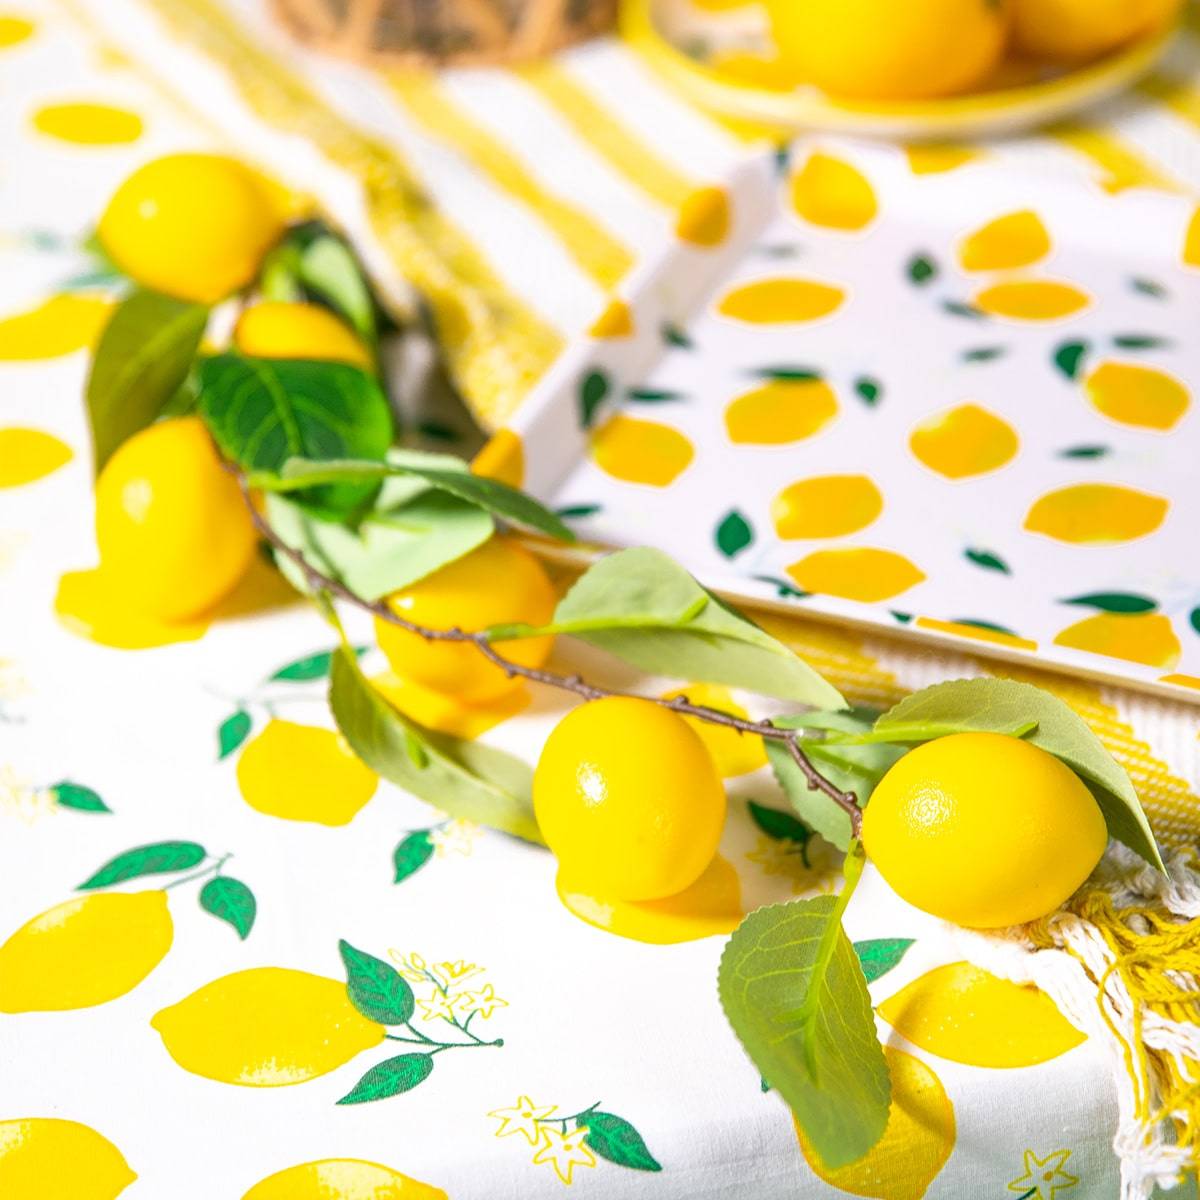 Eine kunstvolle Präsentation von künstlichen Zitronen und grünen Blättern, die auf einer Tischdecke mit Zitronendruck kunstvoll arrangiert sind. Die leuchtend gelben Zitronen und das lebendige Grün werden vor einem gemusterten Hintergrund akzentuiert und verleihen der sommerlichen Dekoration einen erfrischenden und lebendigen visuellen Reiz.